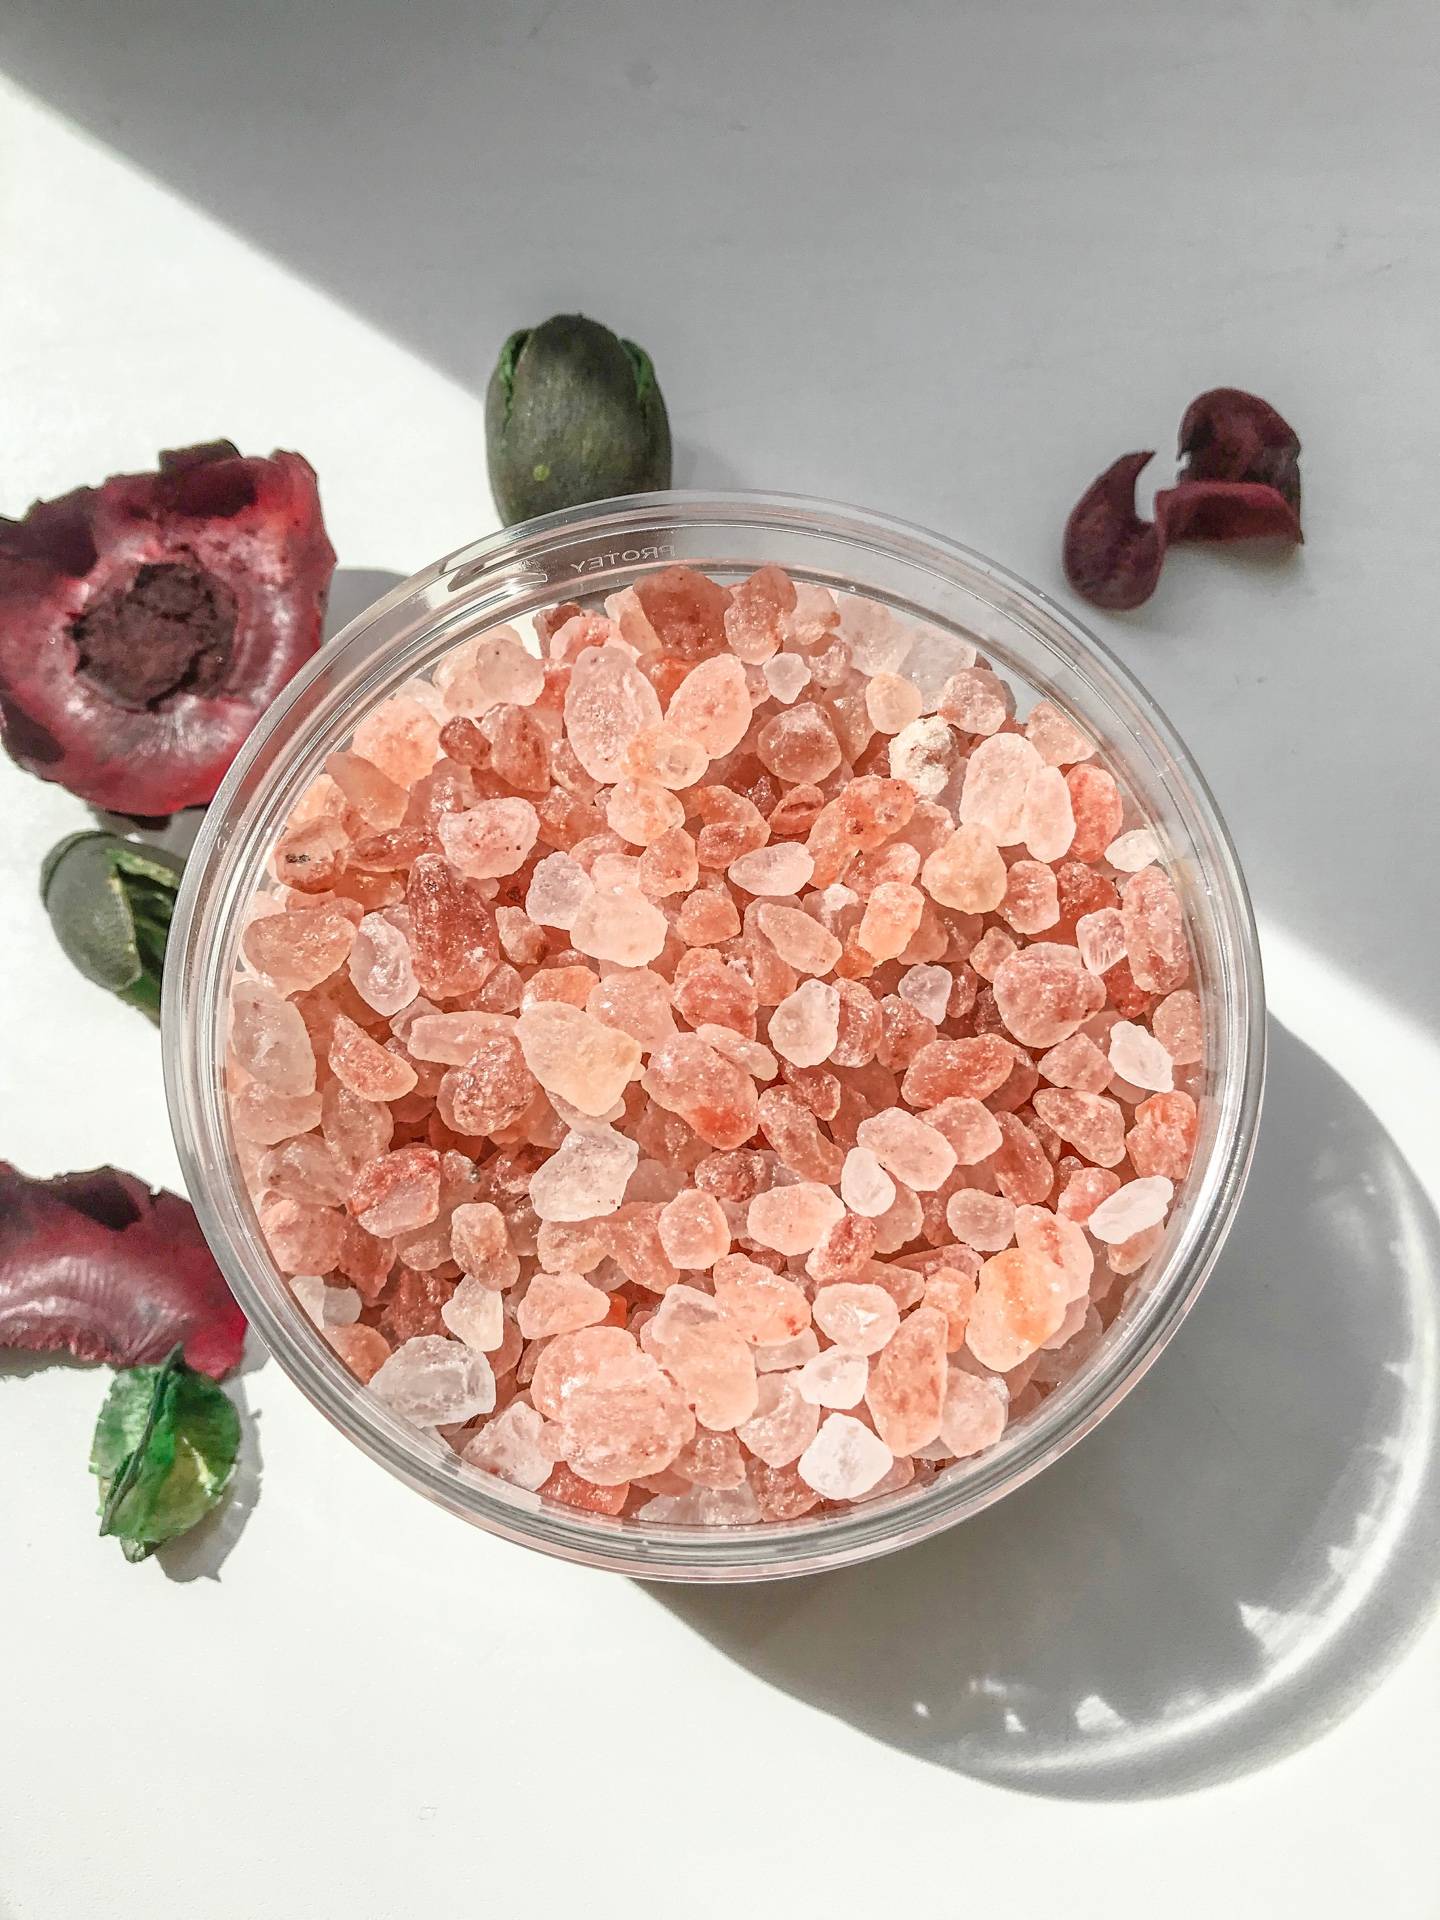 Польза и вред гималайской розовой соли